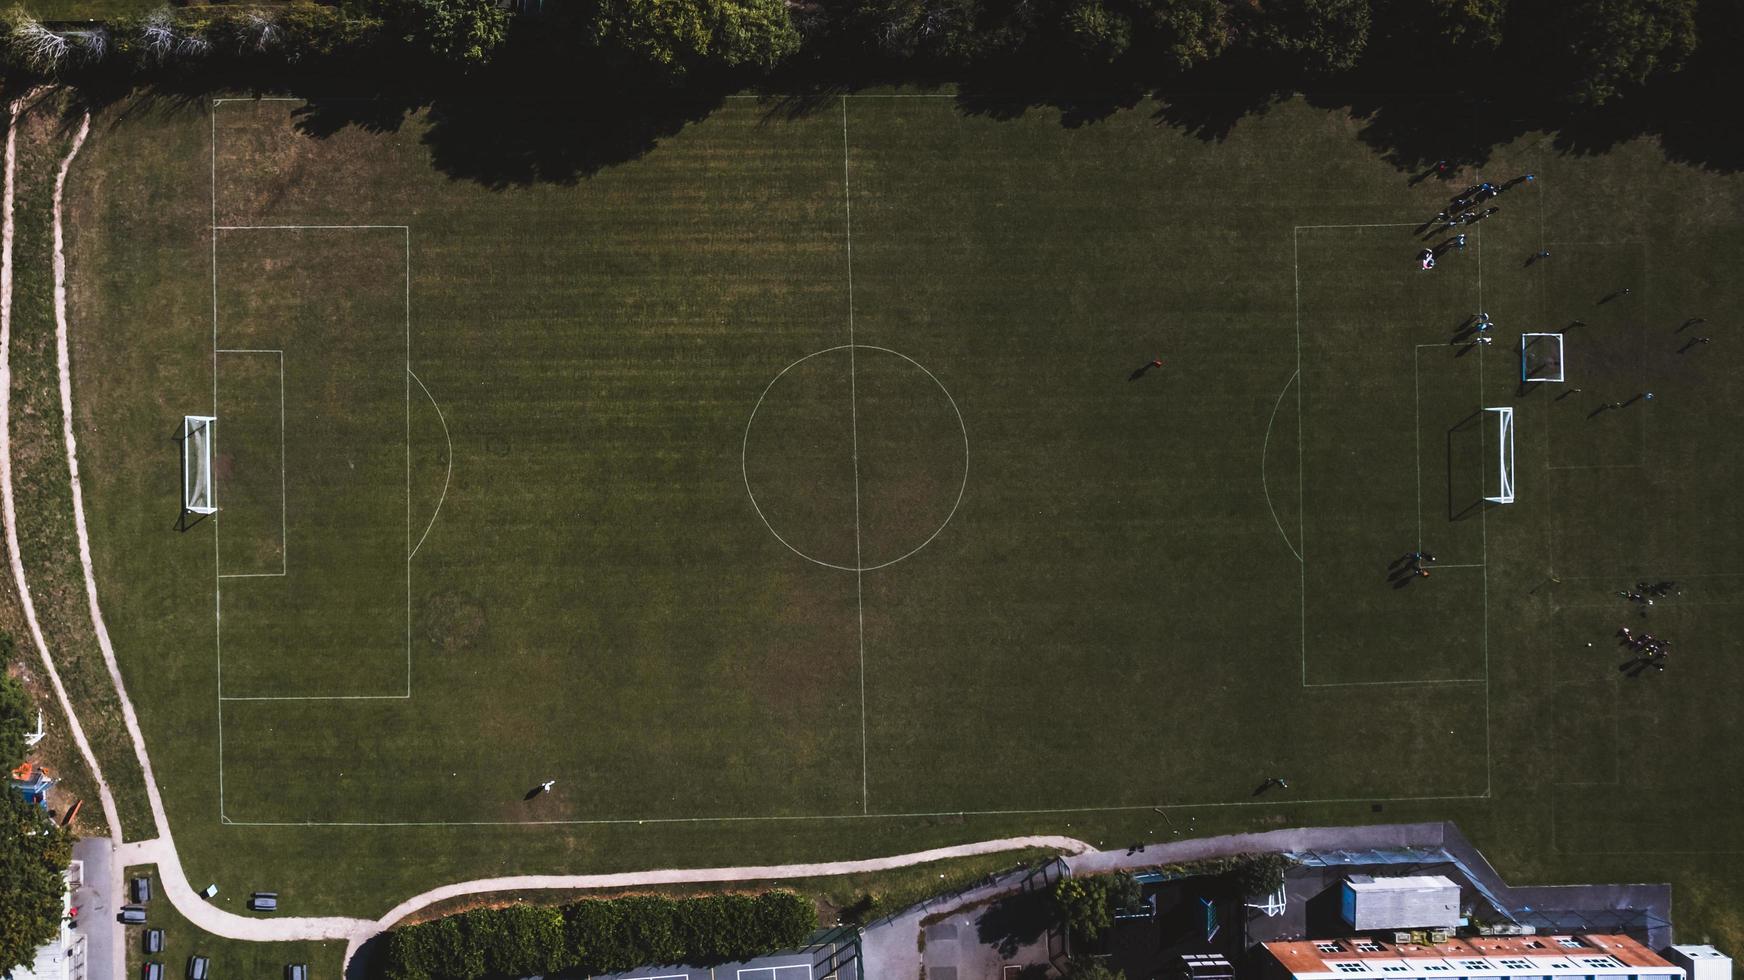 vue aérienne du terrain de foot photo